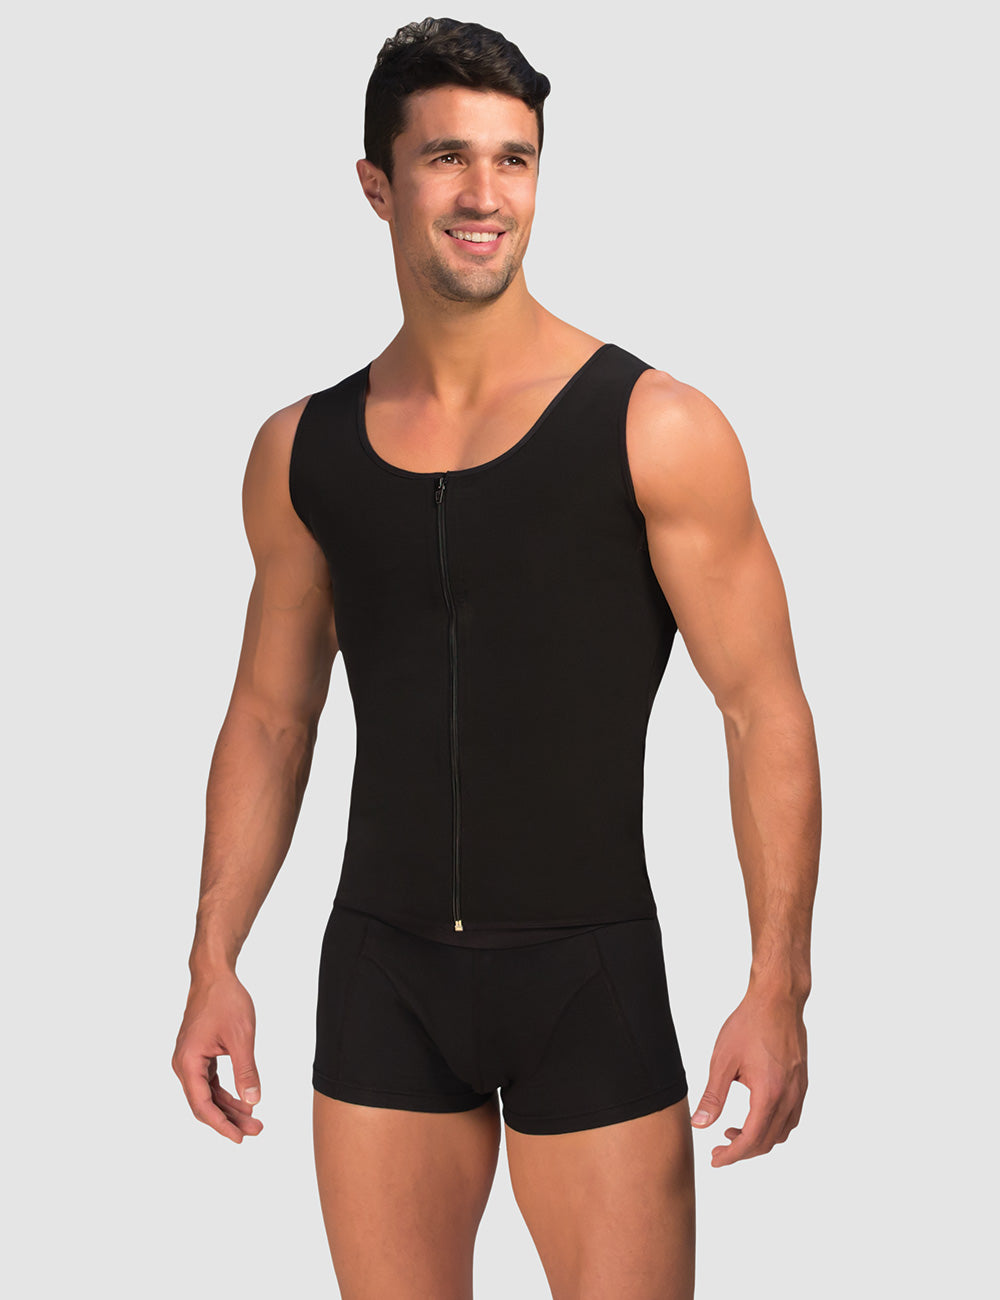 Cotton Spandex Muscle Shirt, Men's Compression Garments